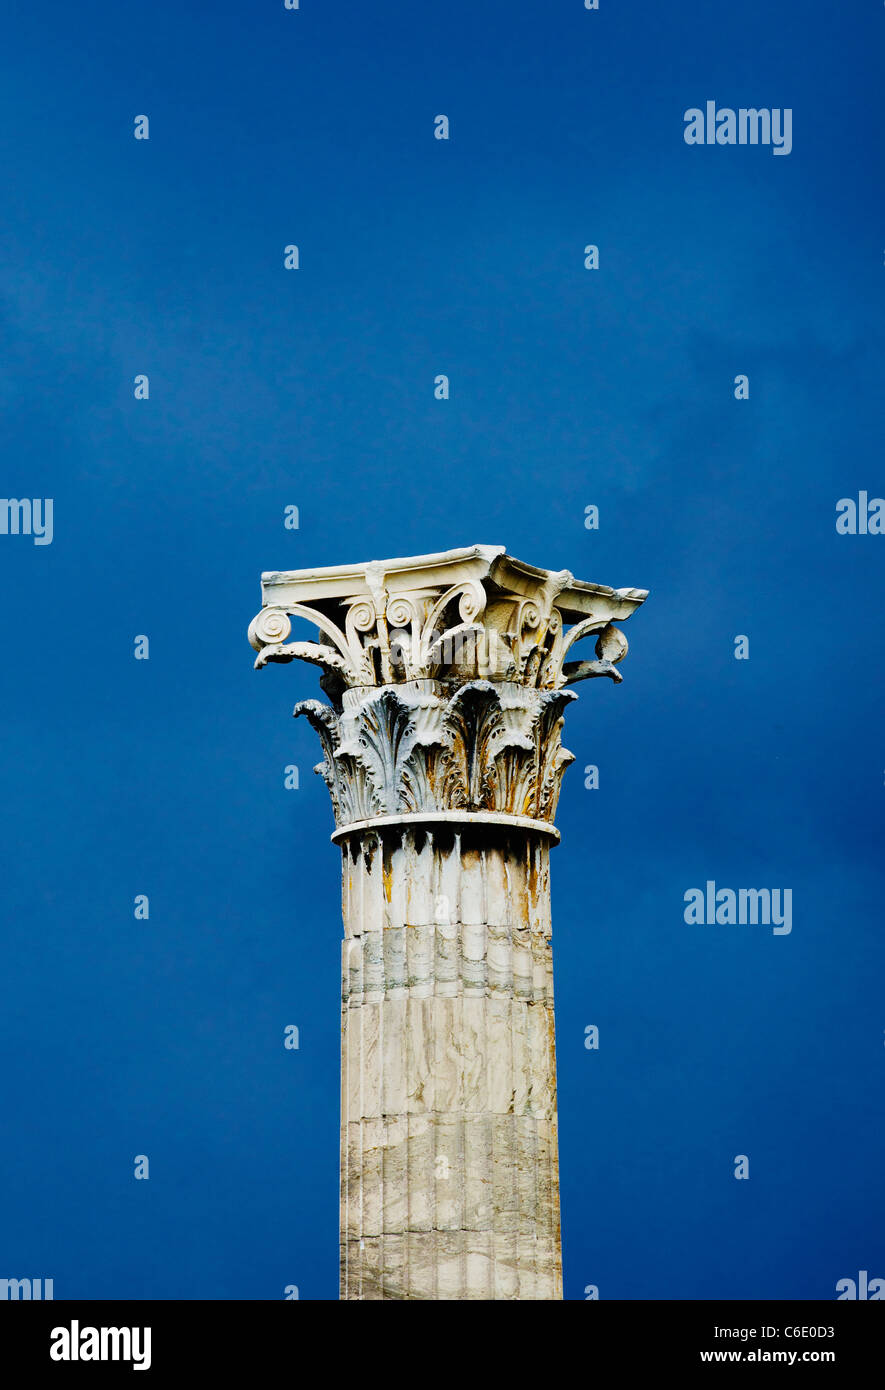 Greece, Athens, Corinthian column at Temple of Olympian Zeus Stock Photo